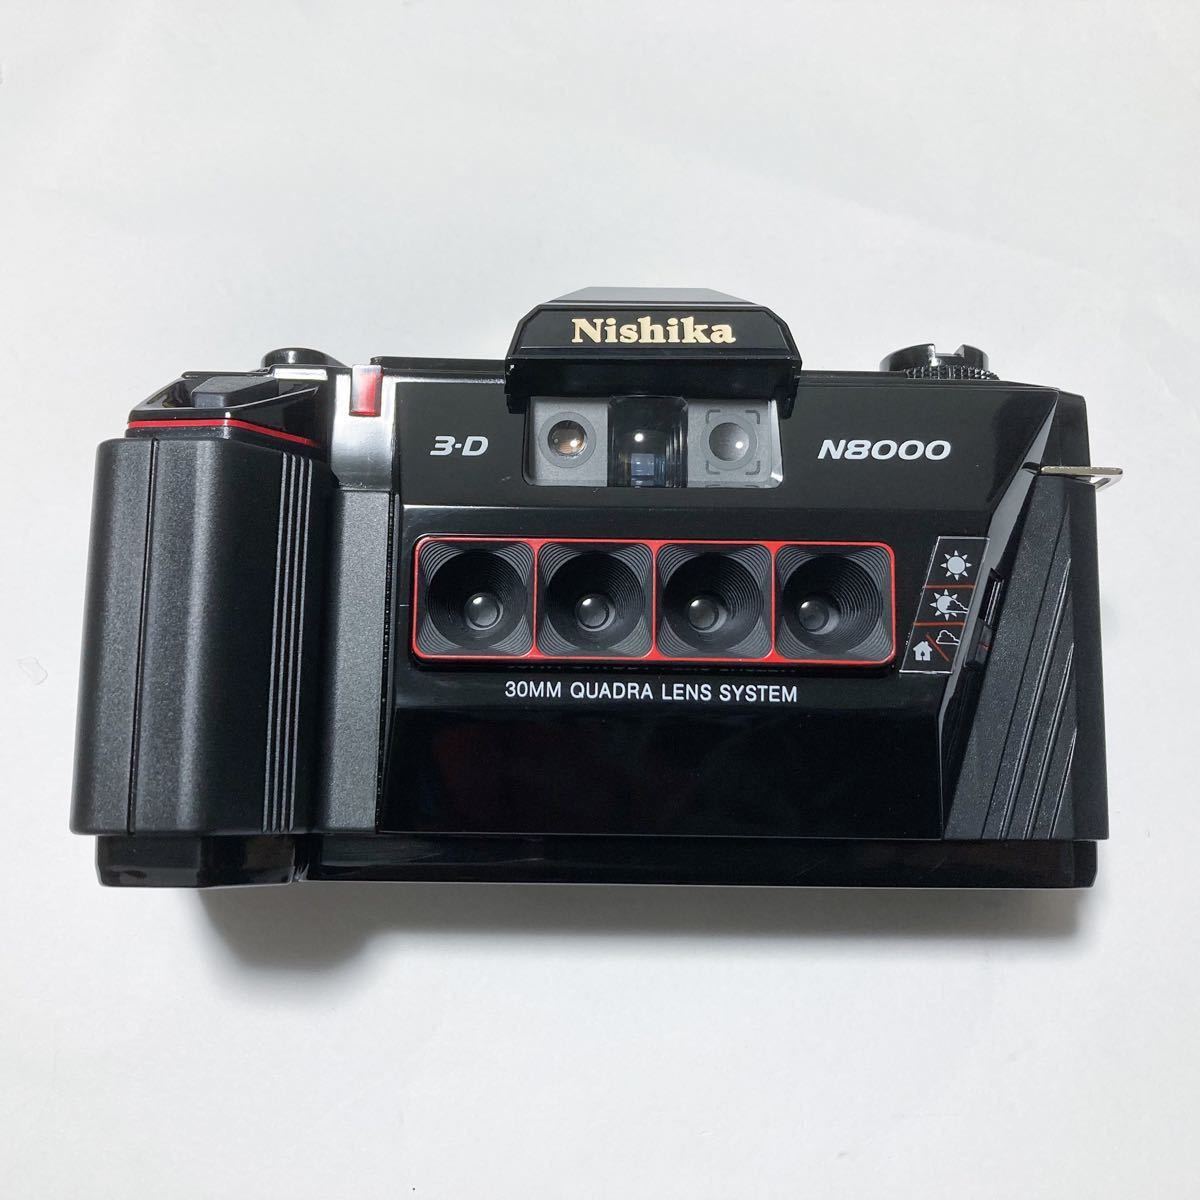 ニシカ 3D N8000 Nishikaフィルムカメラ-